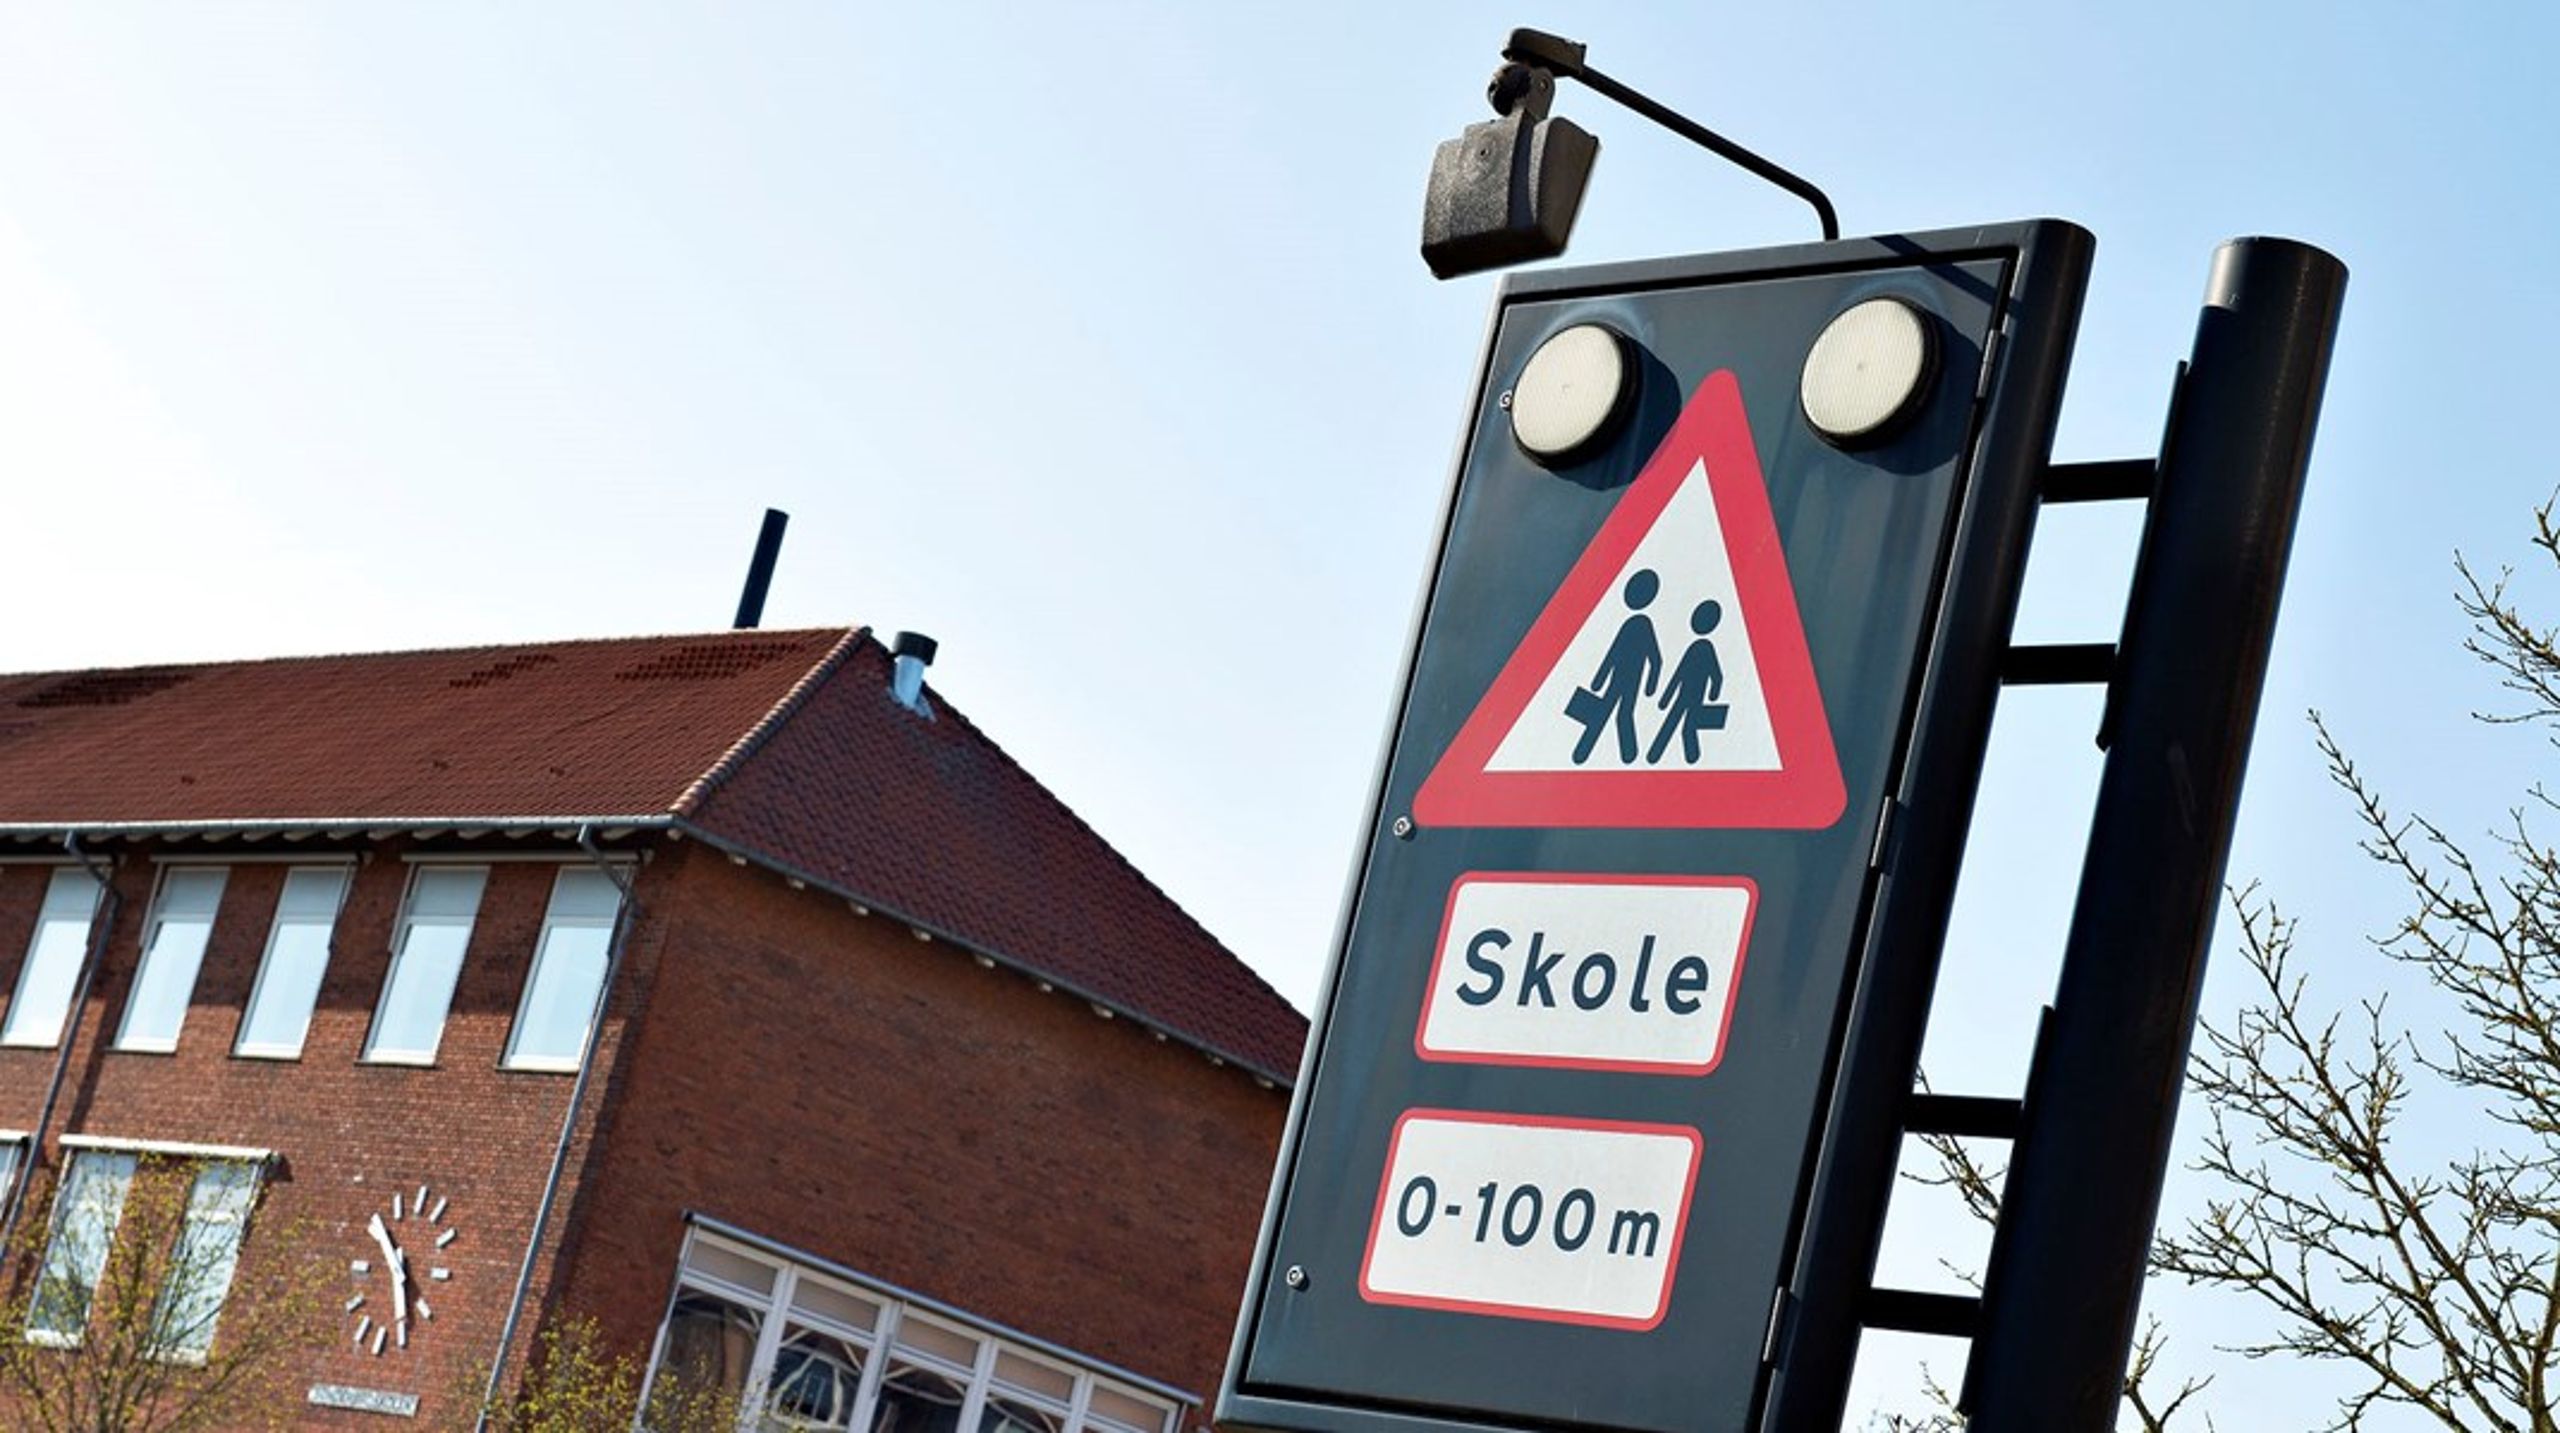 Et forbud mod fossile biler i et område med mange daginstitutioner er en af tre konkrete forslag til forsøg med såkaldte nulemissionszoner fra Københavns Kommune.